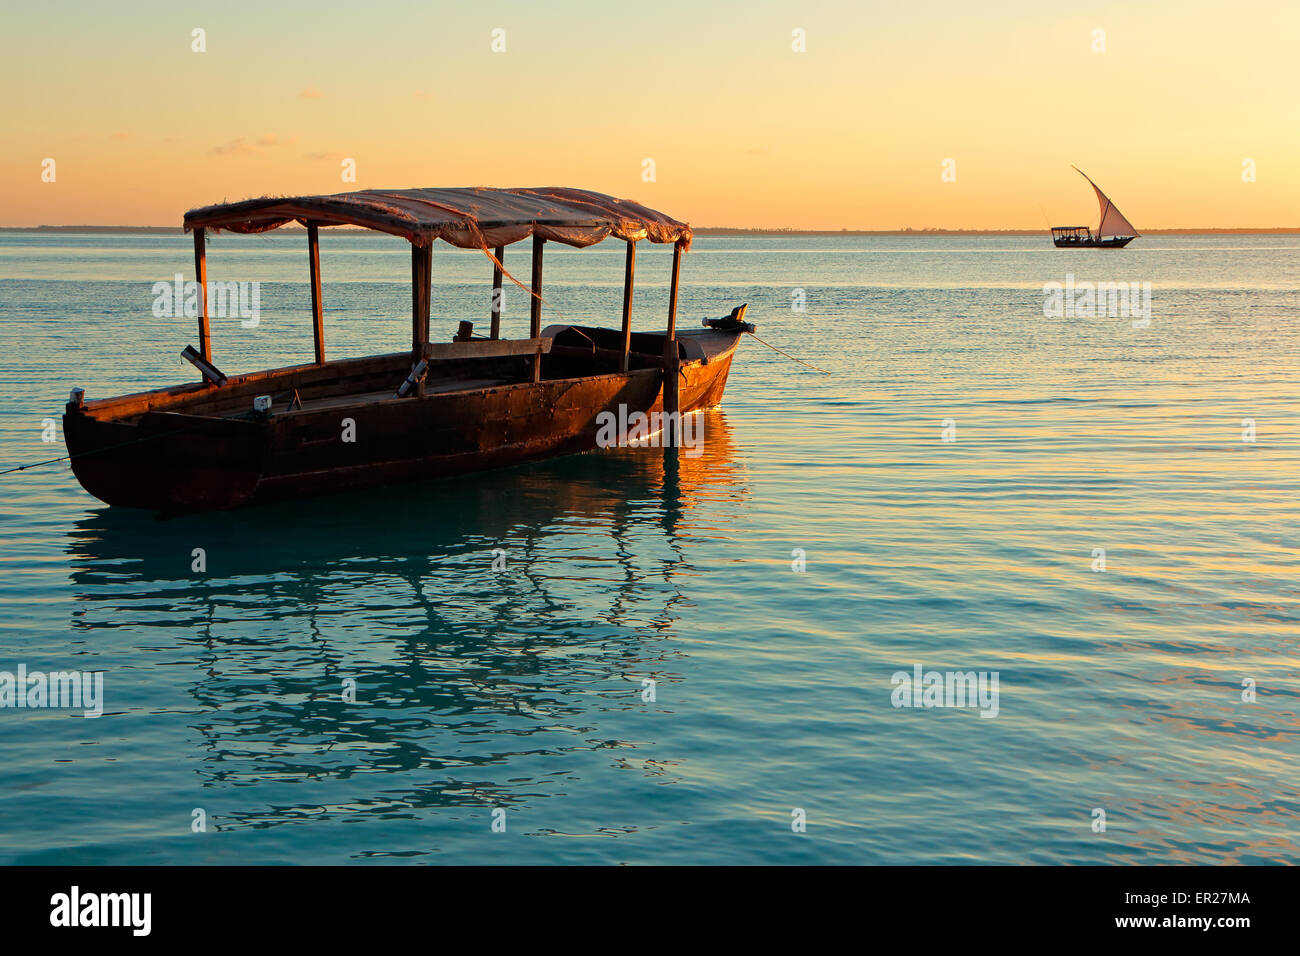 Bateau en bois sur l'eau au coucher du soleil, l'île de Zanzibar Banque D'Images